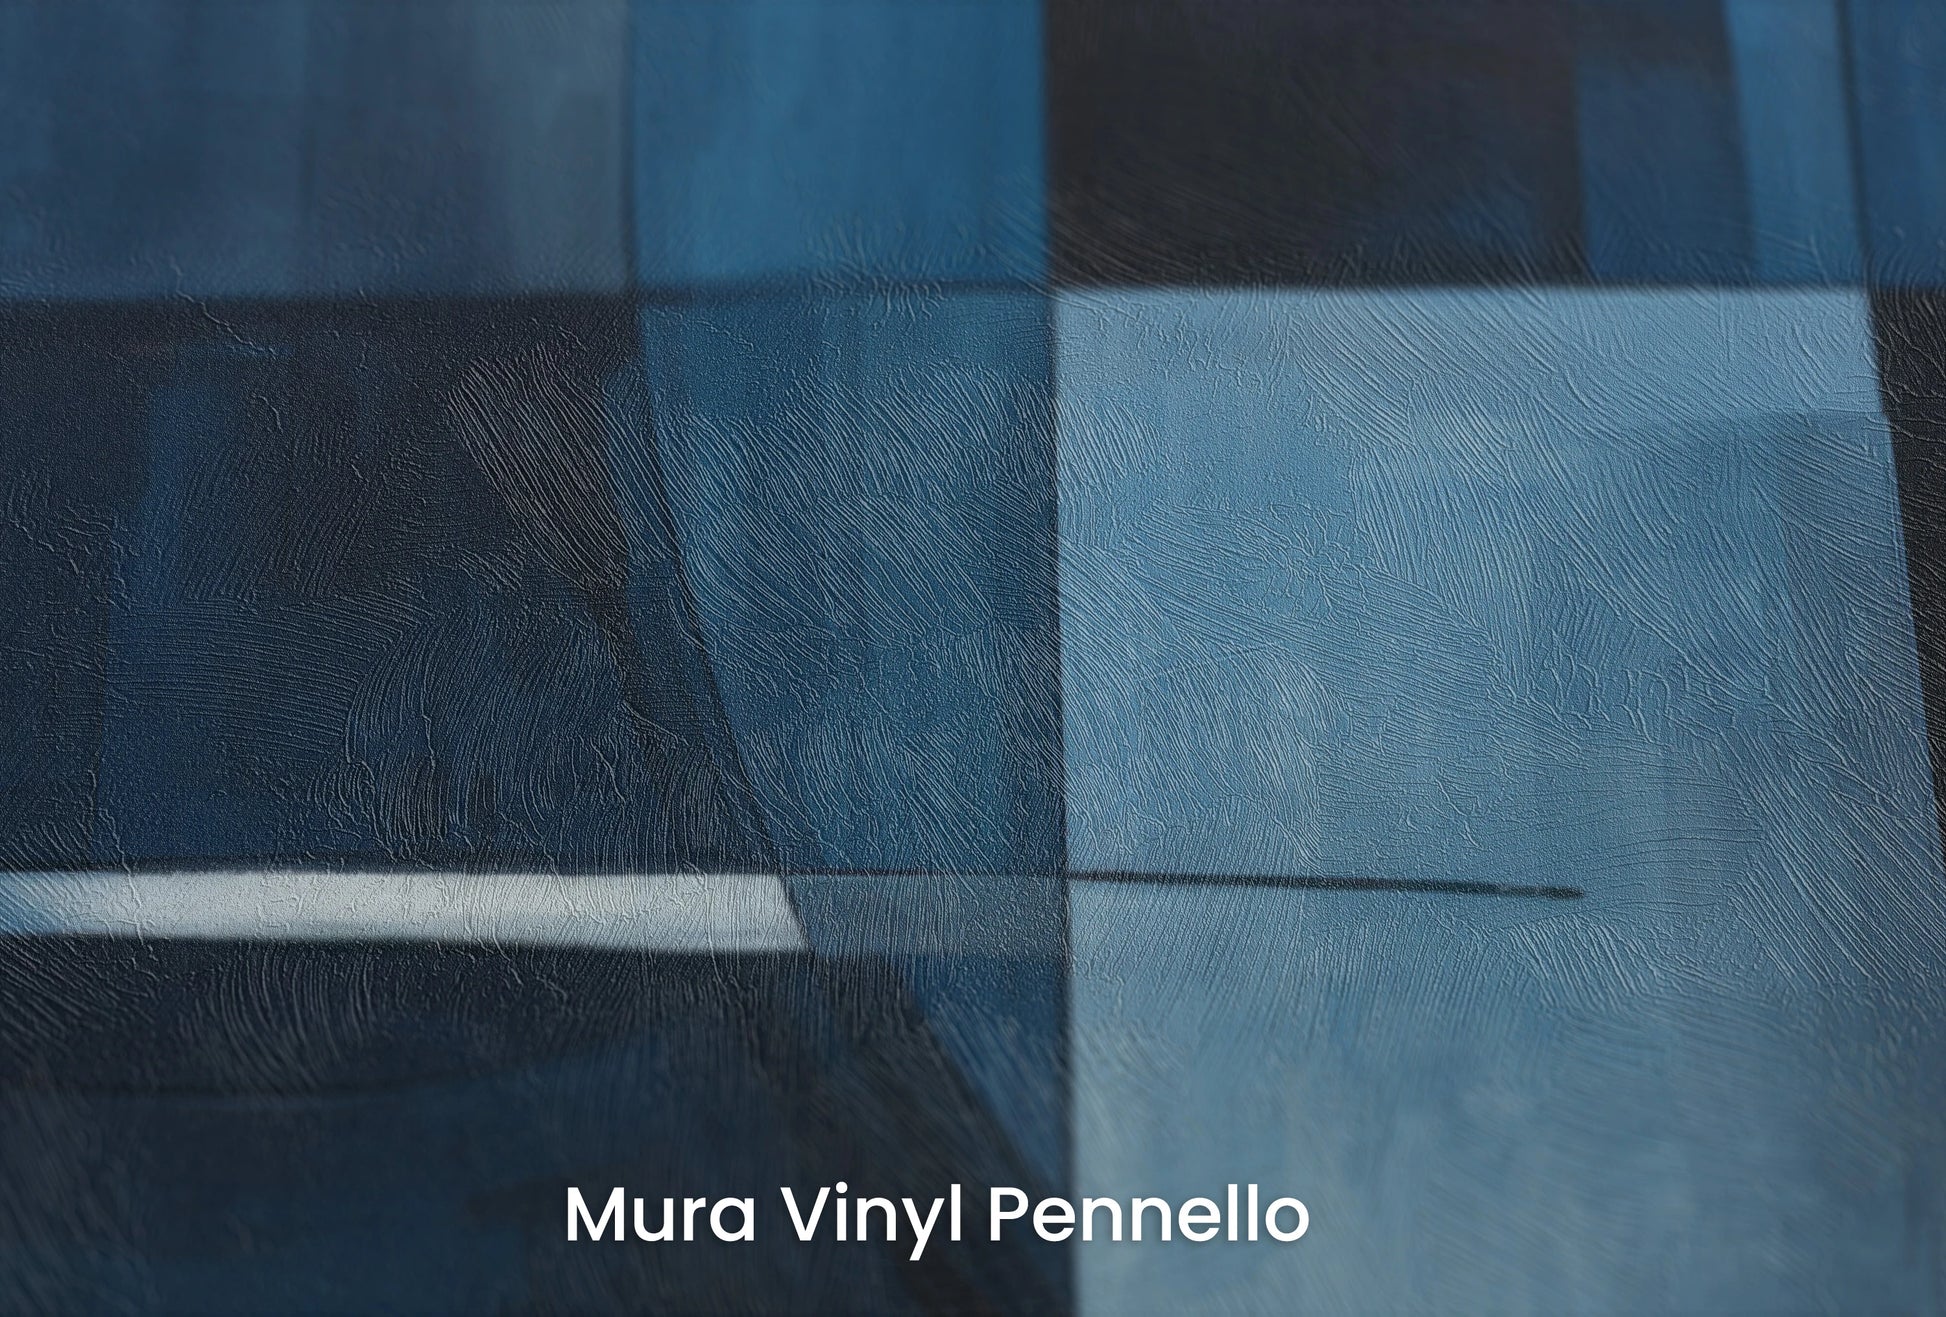 Zbliżenie na artystyczną fototapetę o nazwie Blue Orbital na podłożu Mura Vinyl Pennello - faktura pociągnięć pędzla malarskiego.